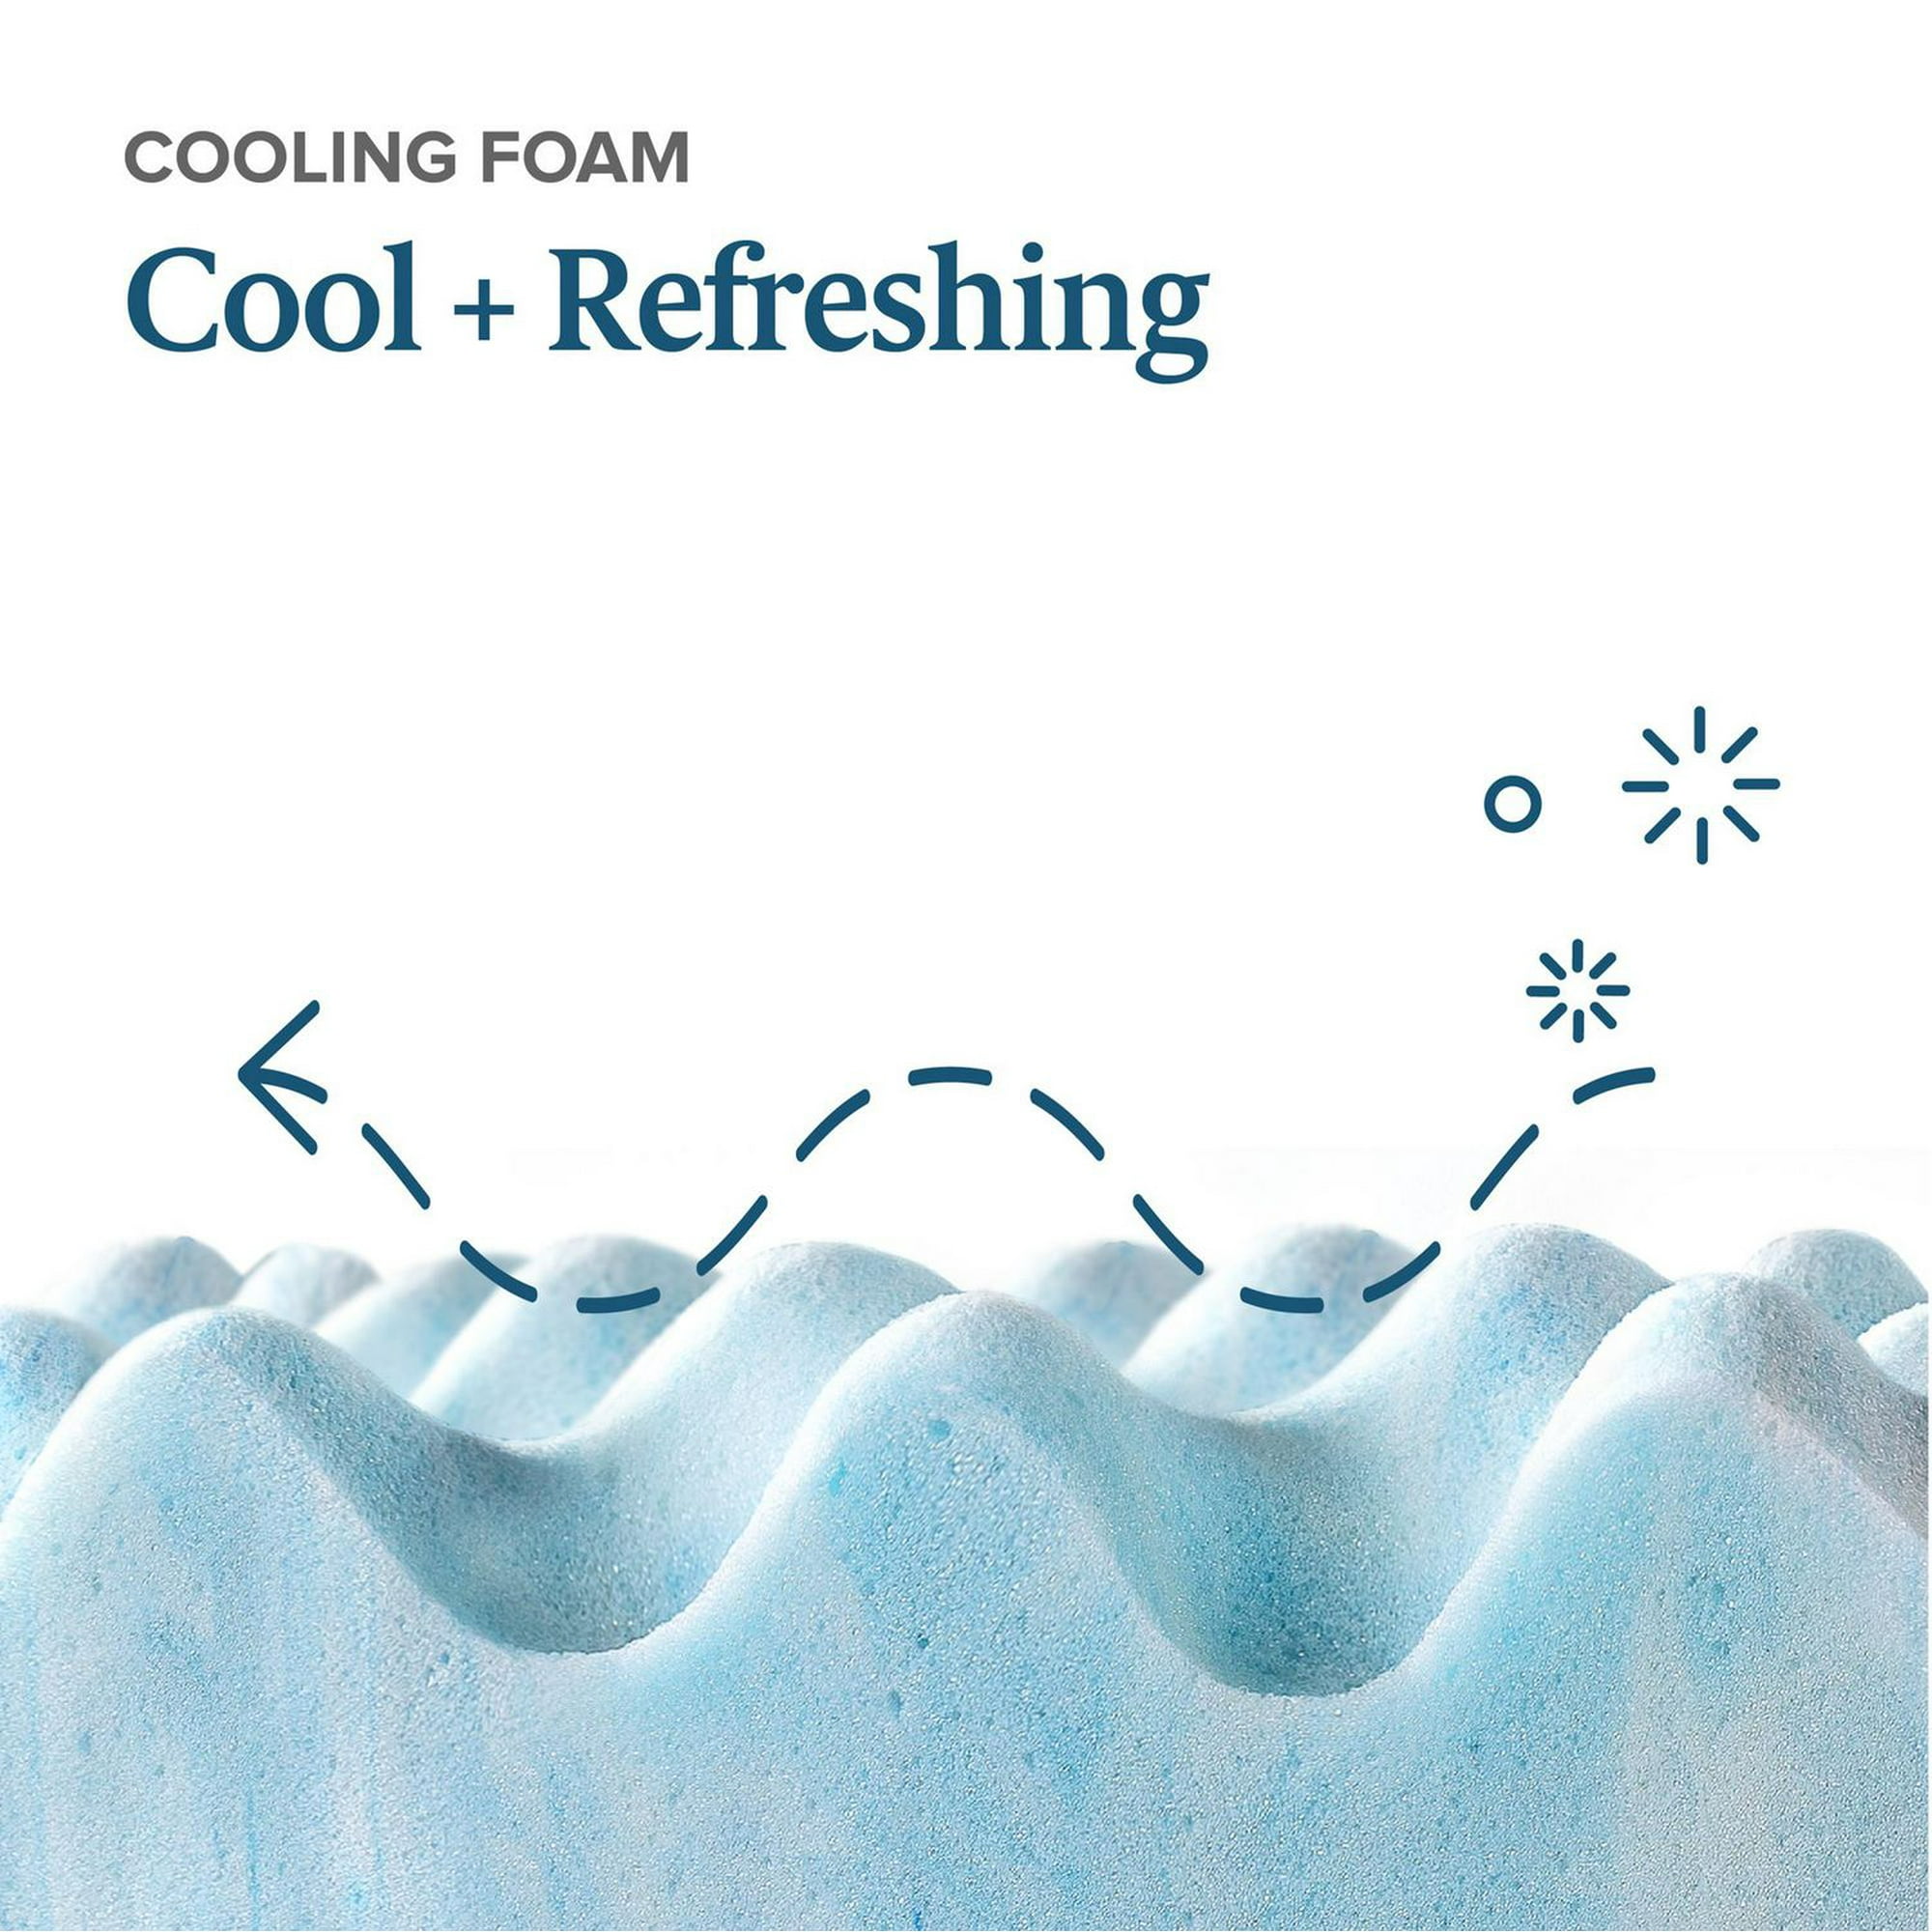 Spa Sensations by Zinus 2 Swirl Cooling Gel Memory Foam Air Flow Mattress  Topper- 5 Year Warranty